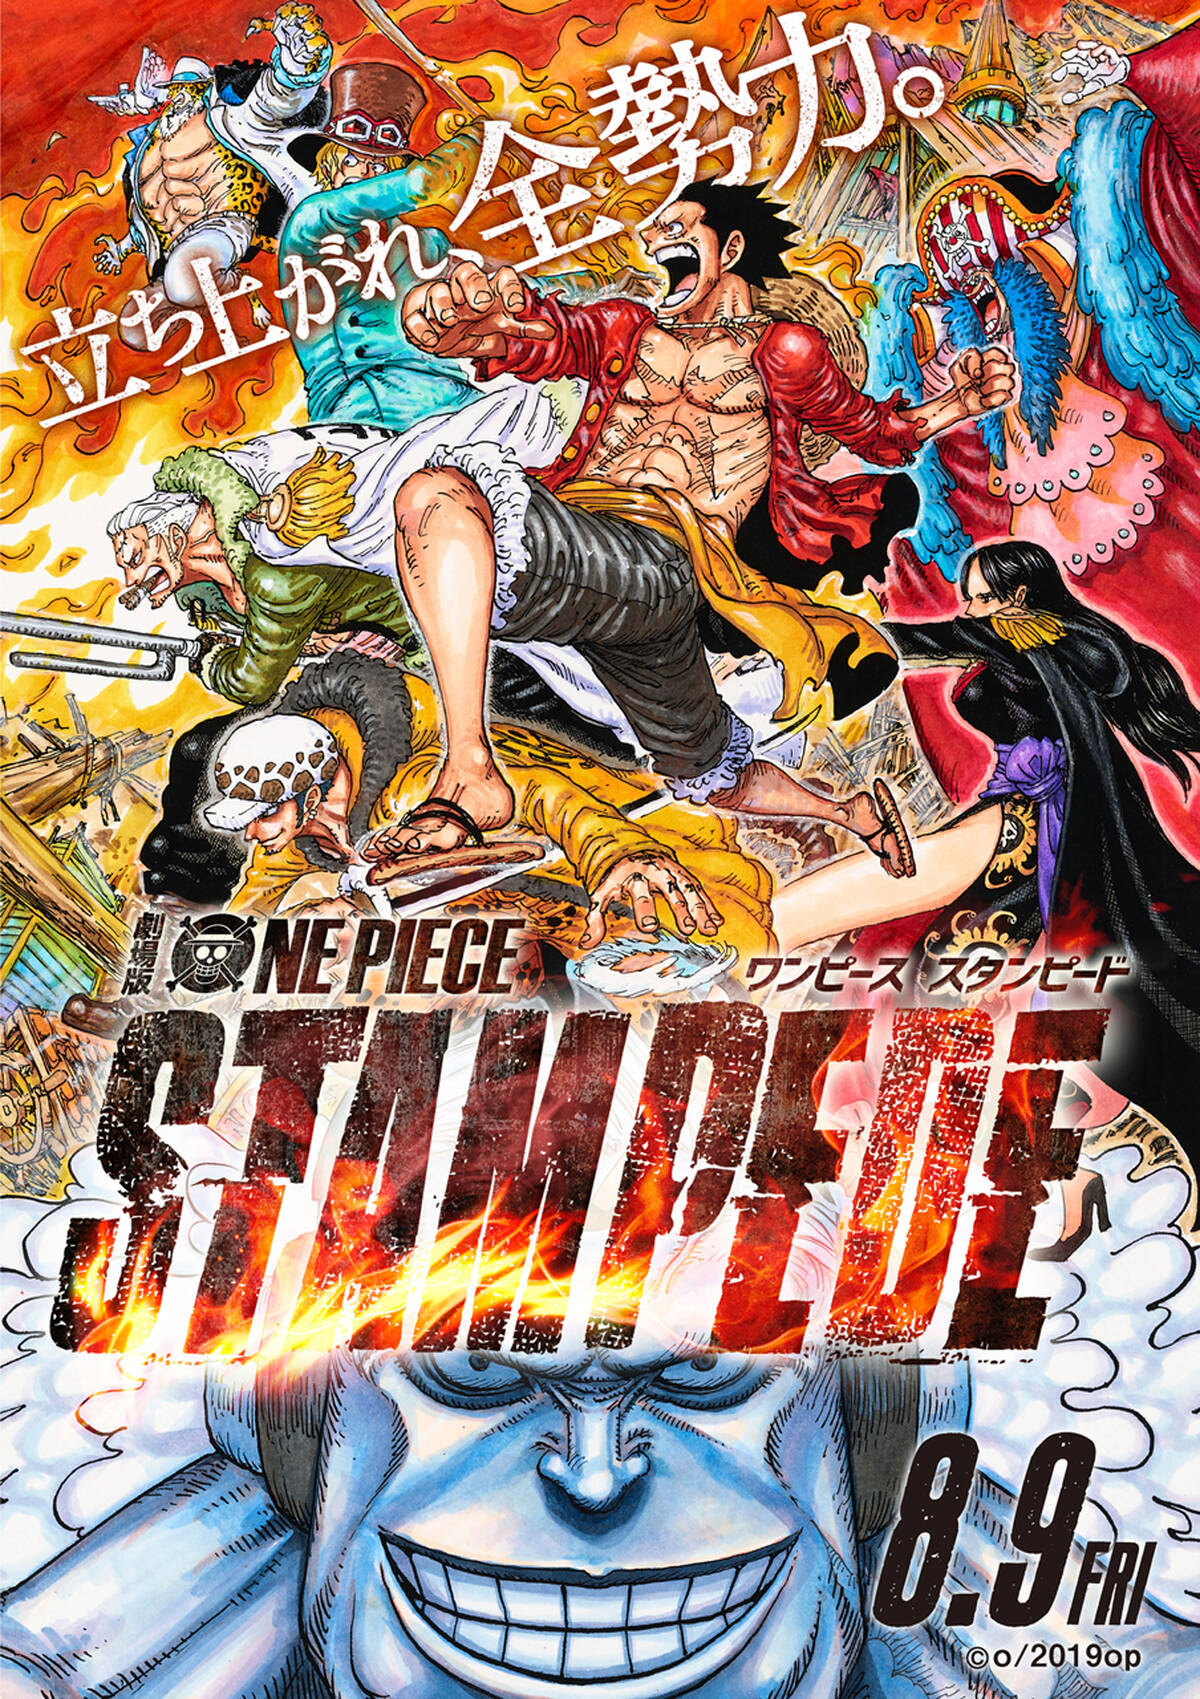 劇場版 One Piece Stampede オールスターメンバーが共闘 原作者 尾田栄一郎描き下ろしポスターが ついに解禁 アキバ総研